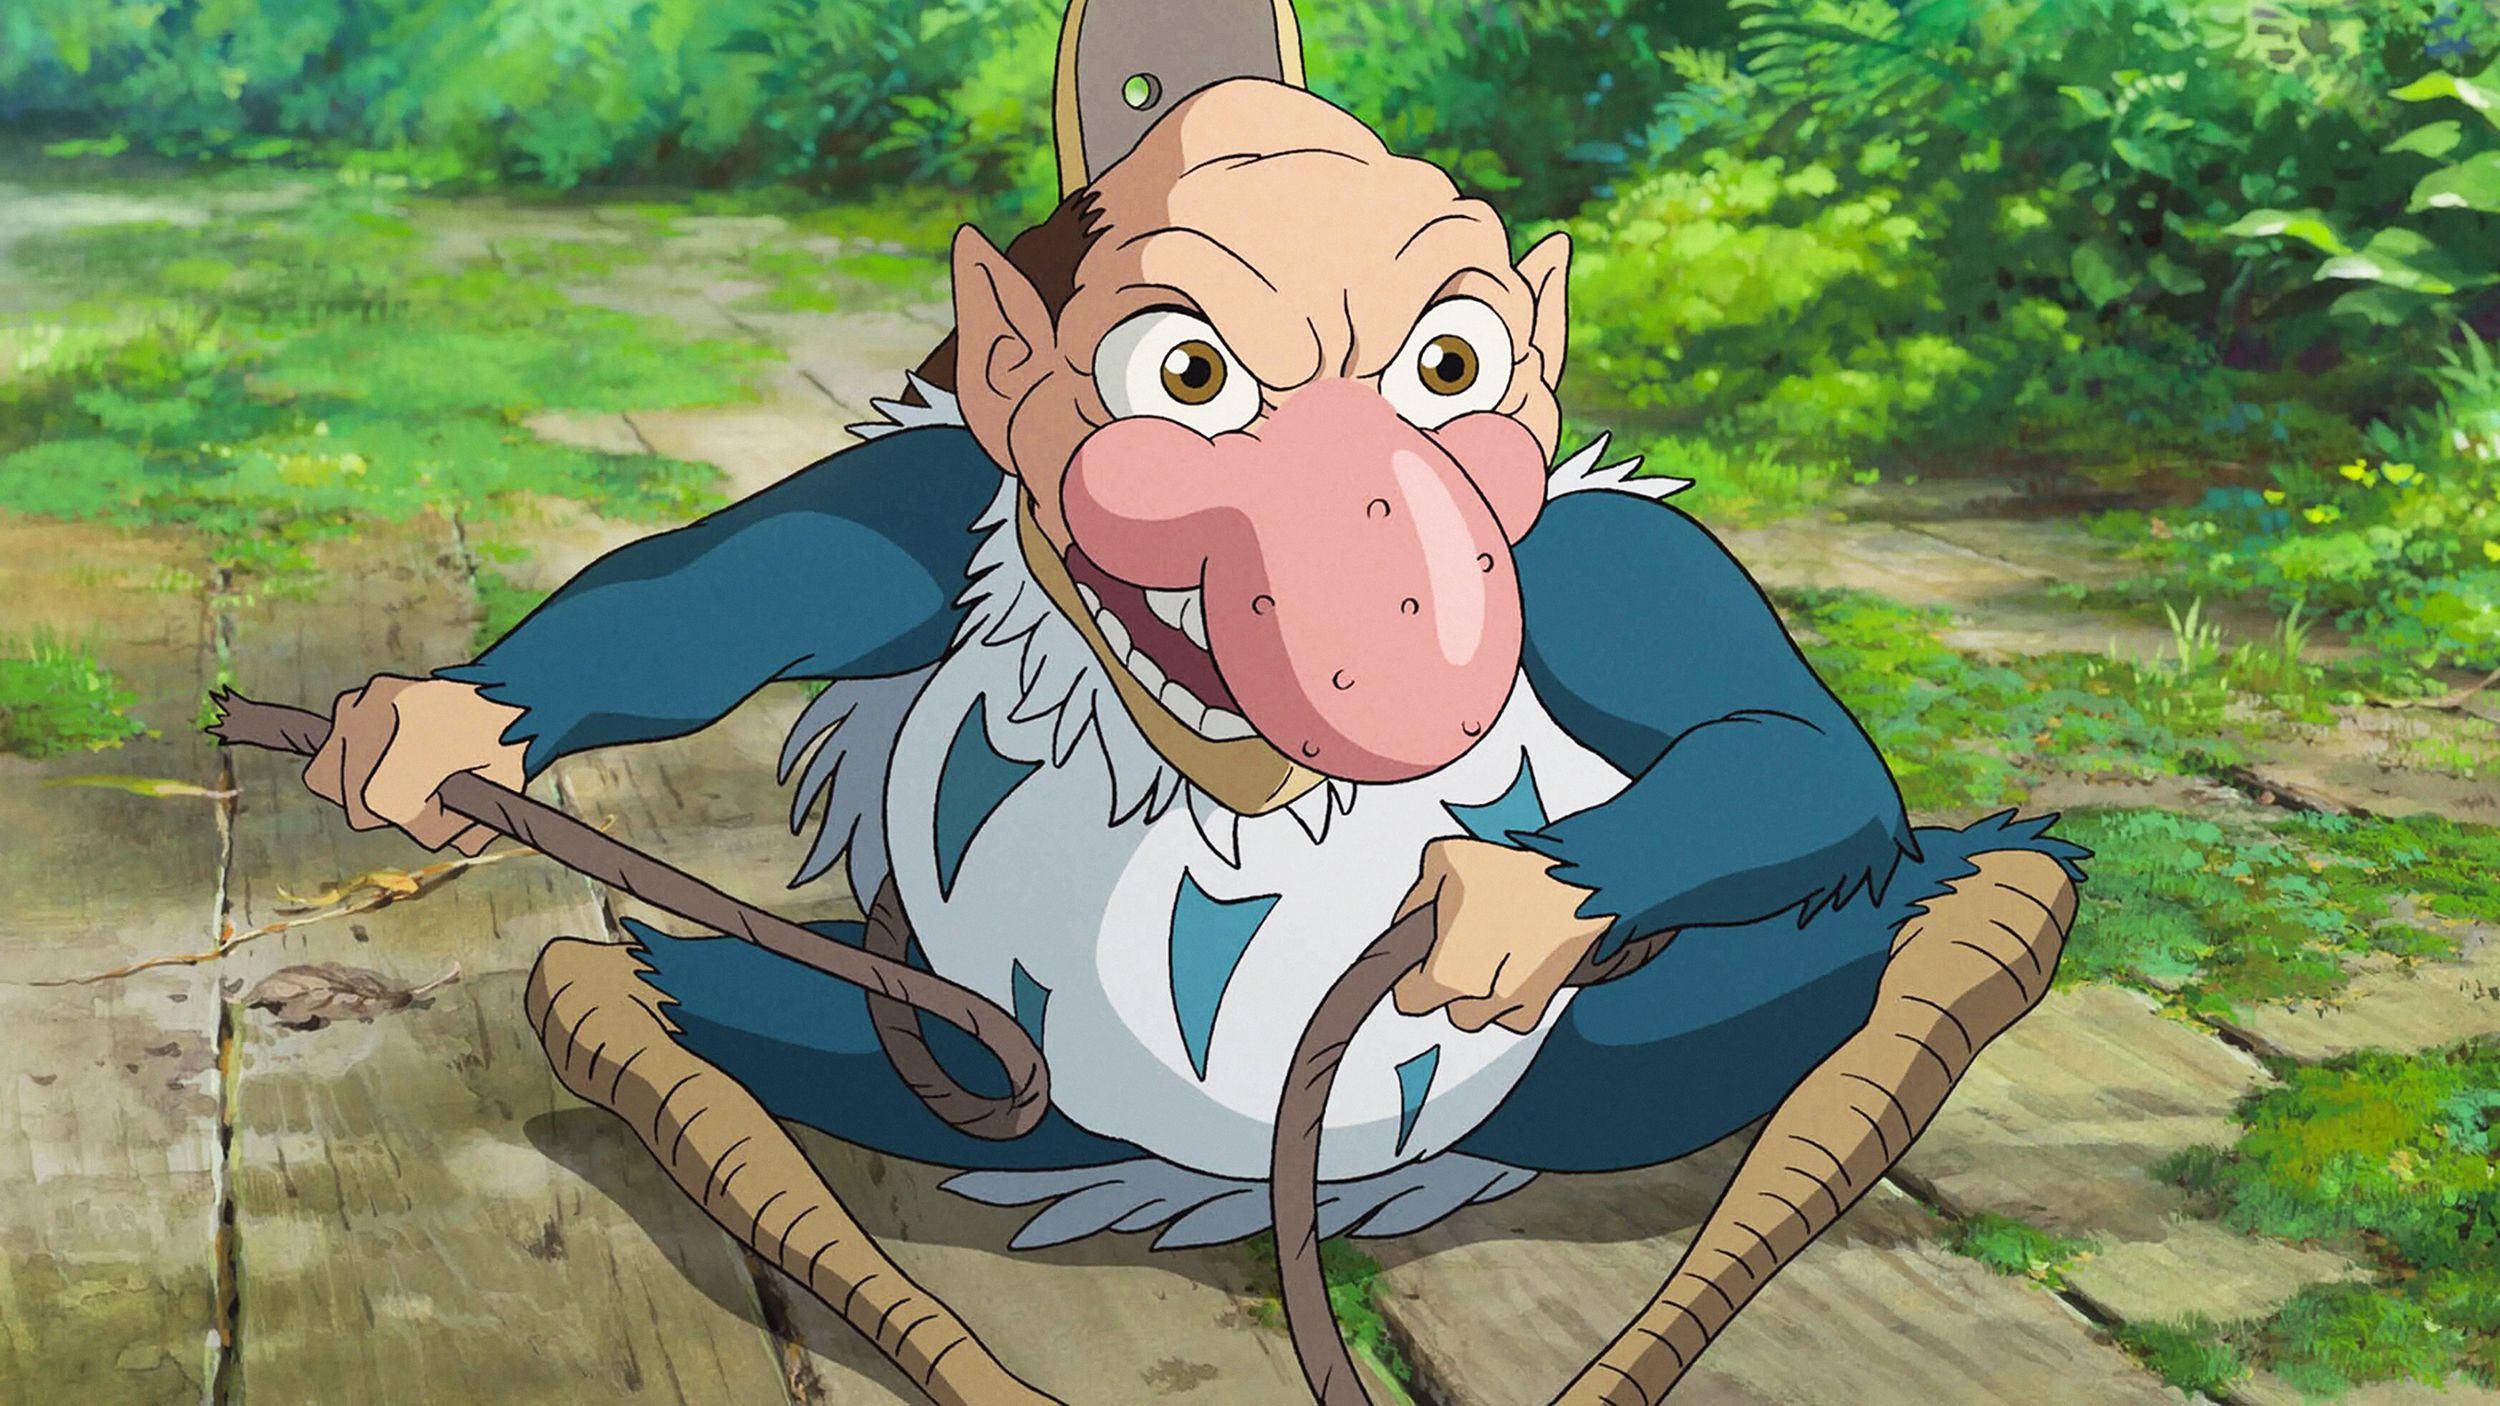 Studio Ghibli estrenará la última película de Hayao Miyazaki